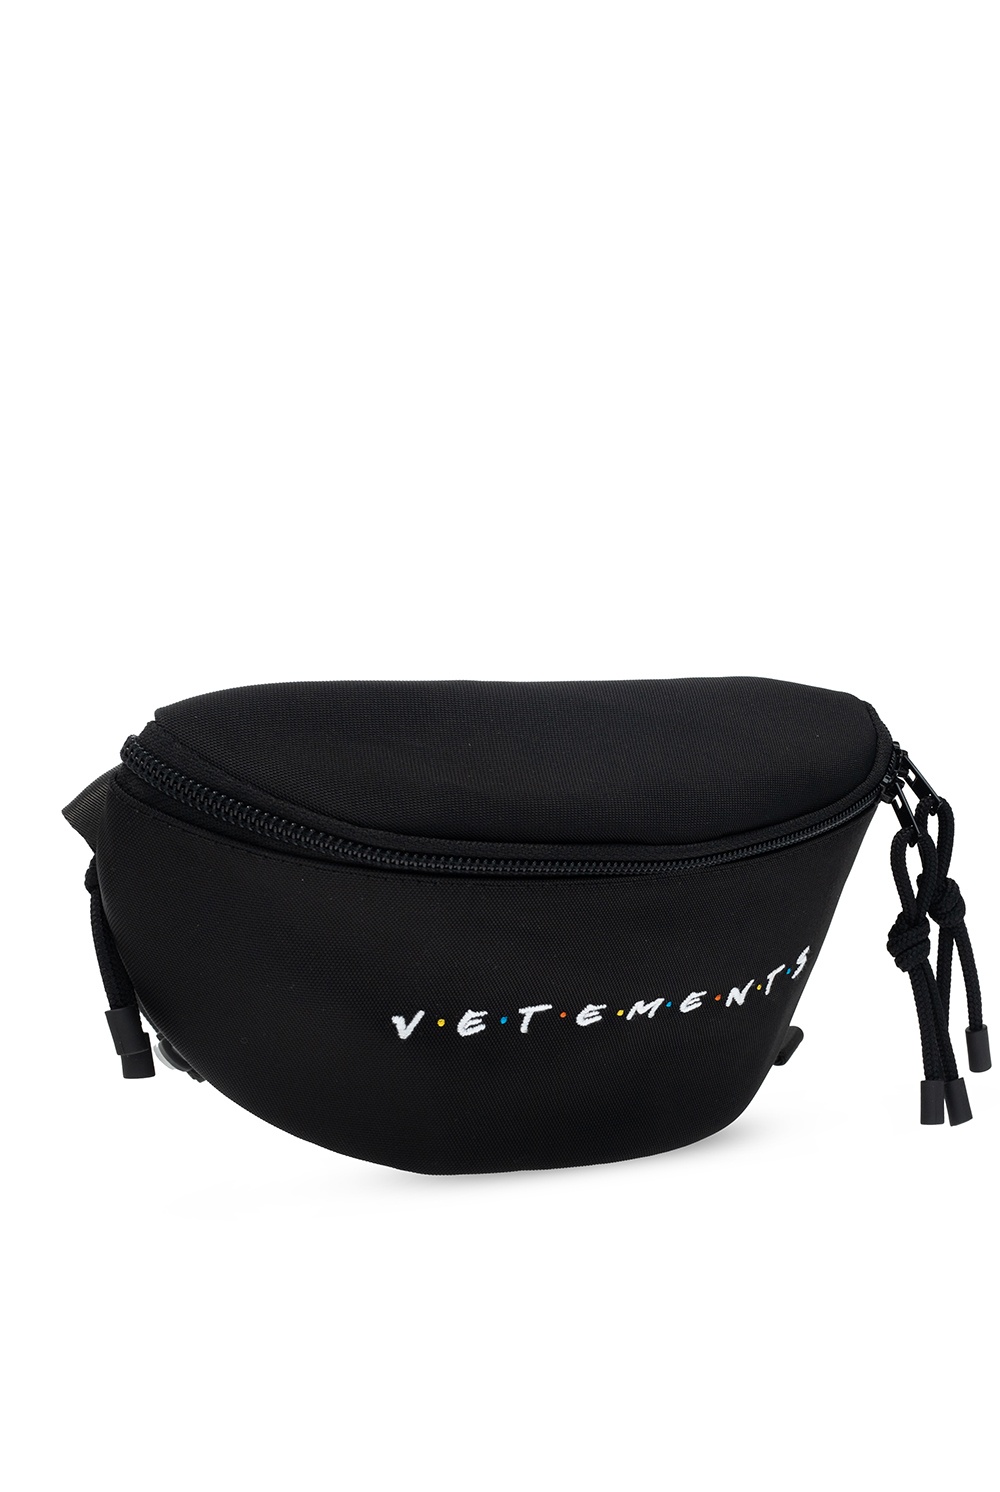 VETEMENTS Branded belt bag | Men's Bags | IetpShops